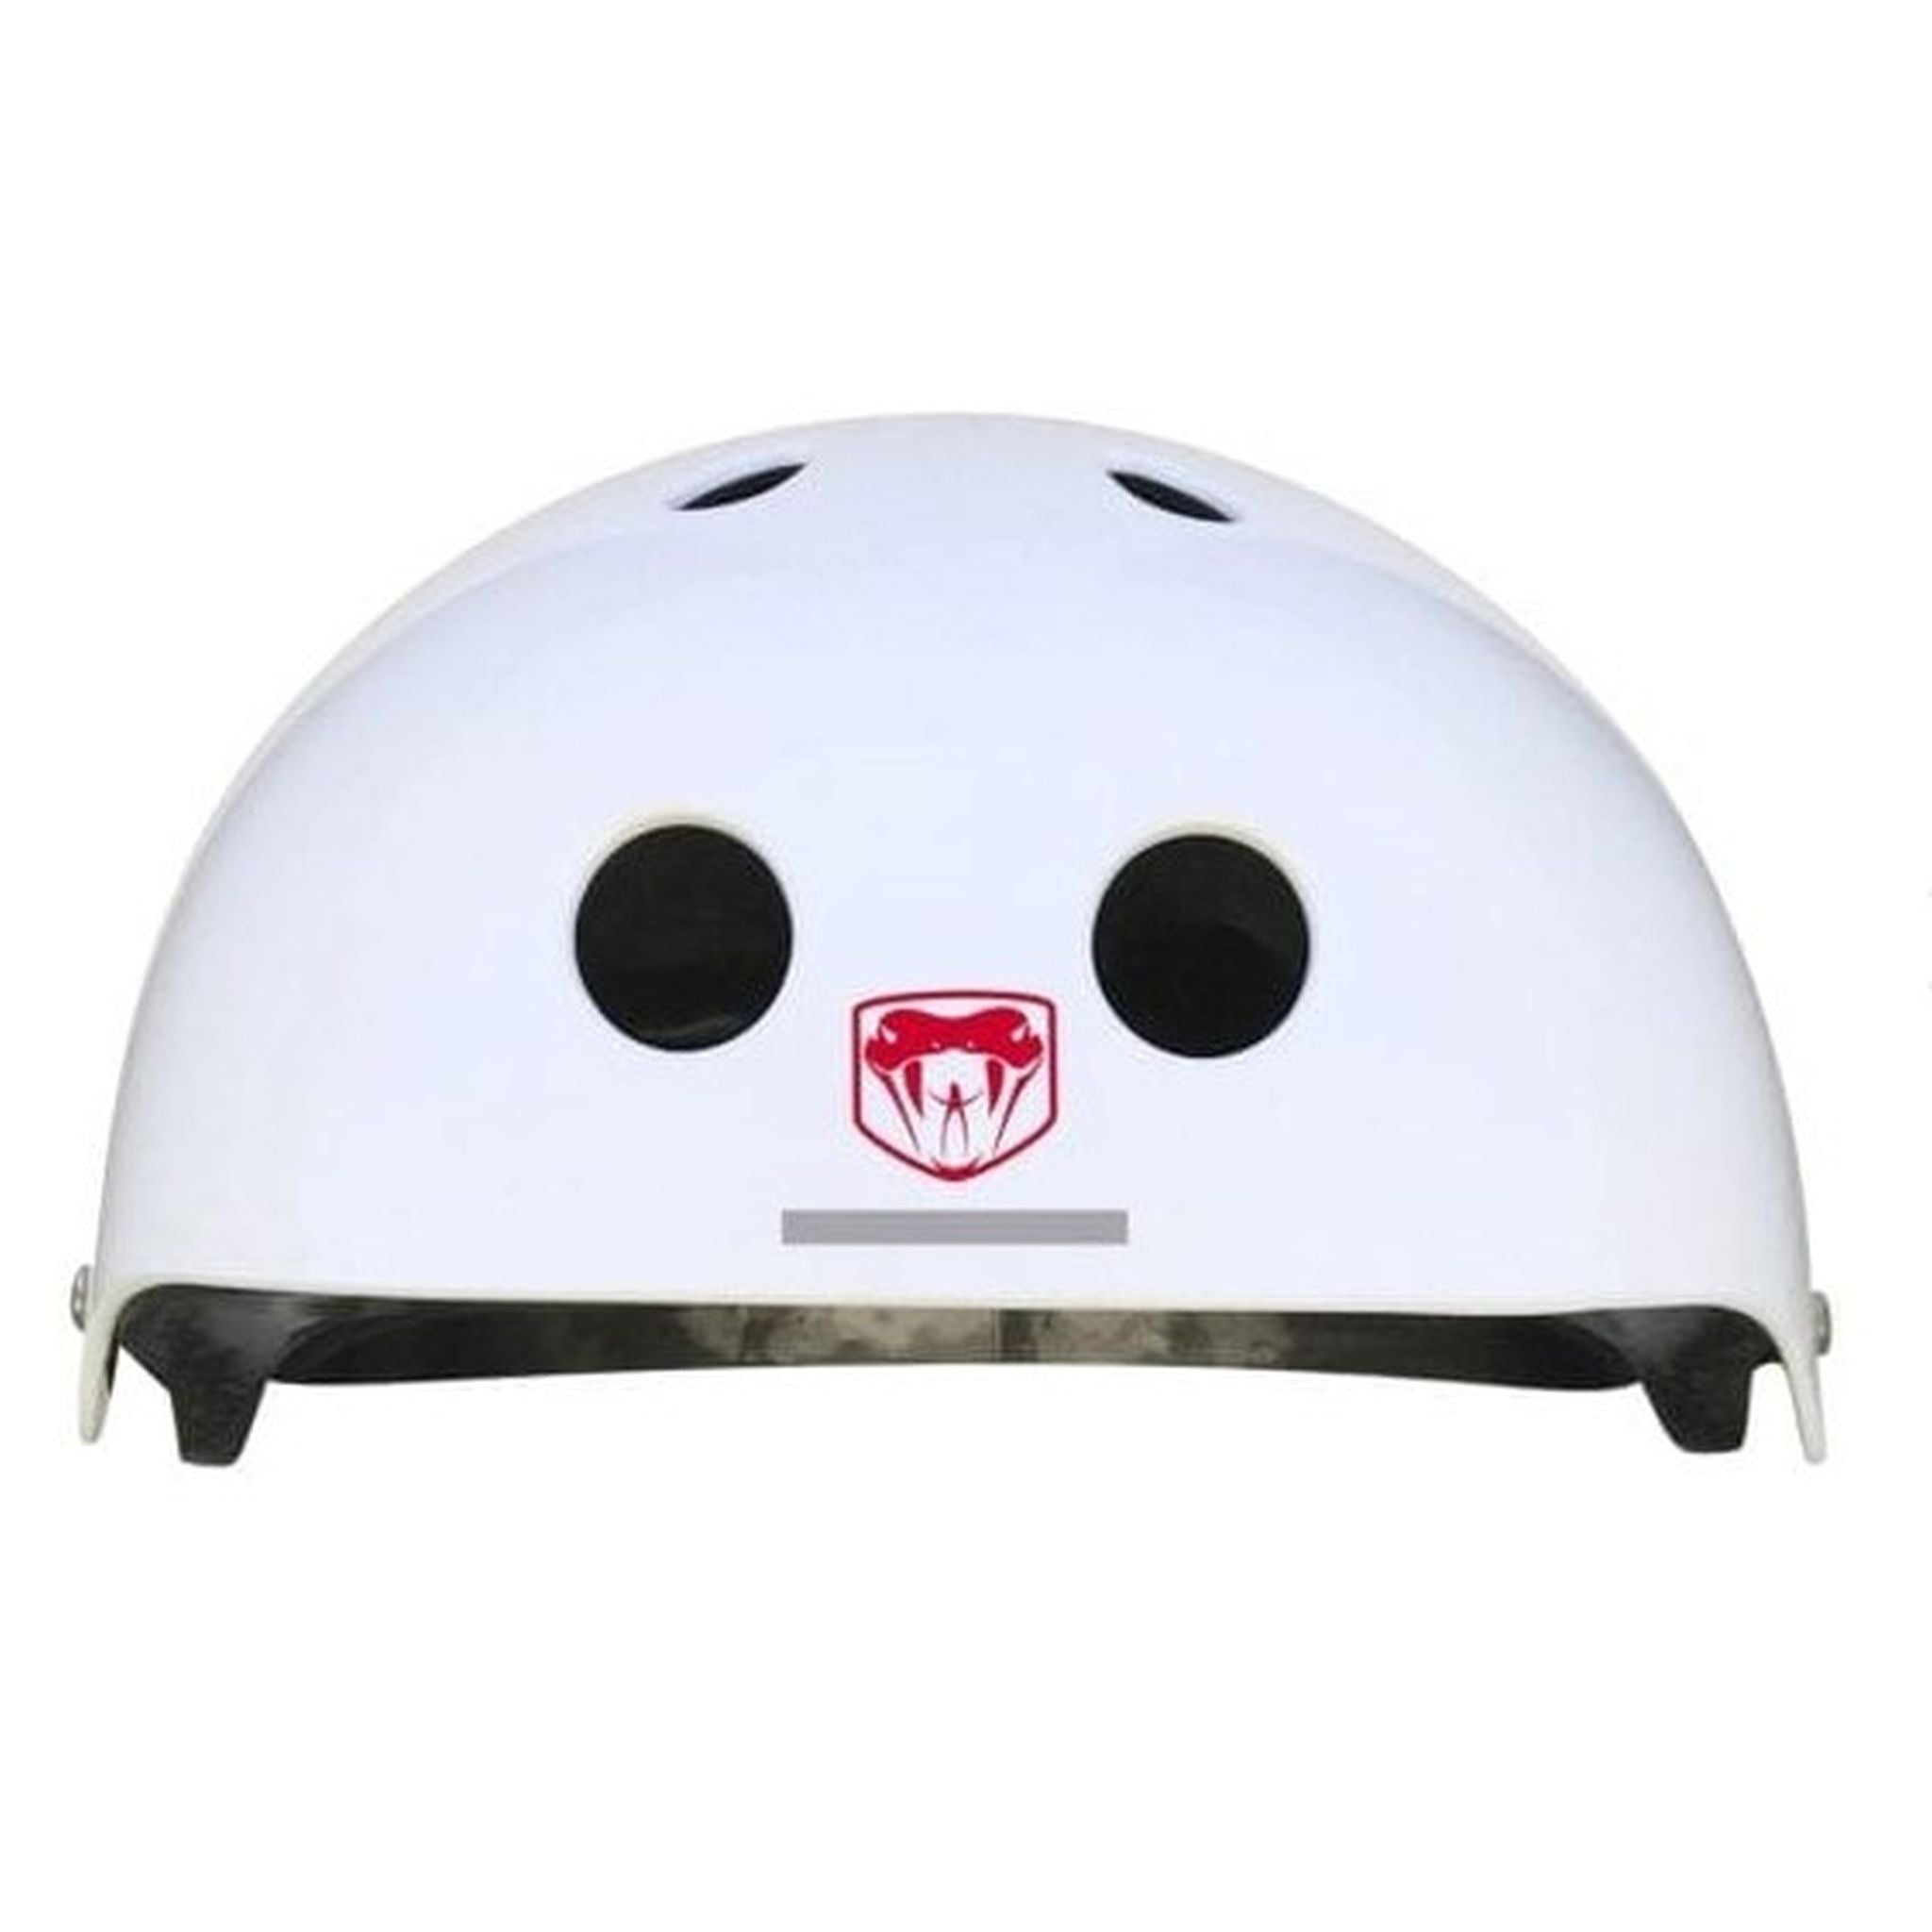 Adrenalin Cross Sports Pro Adjustable Helmet